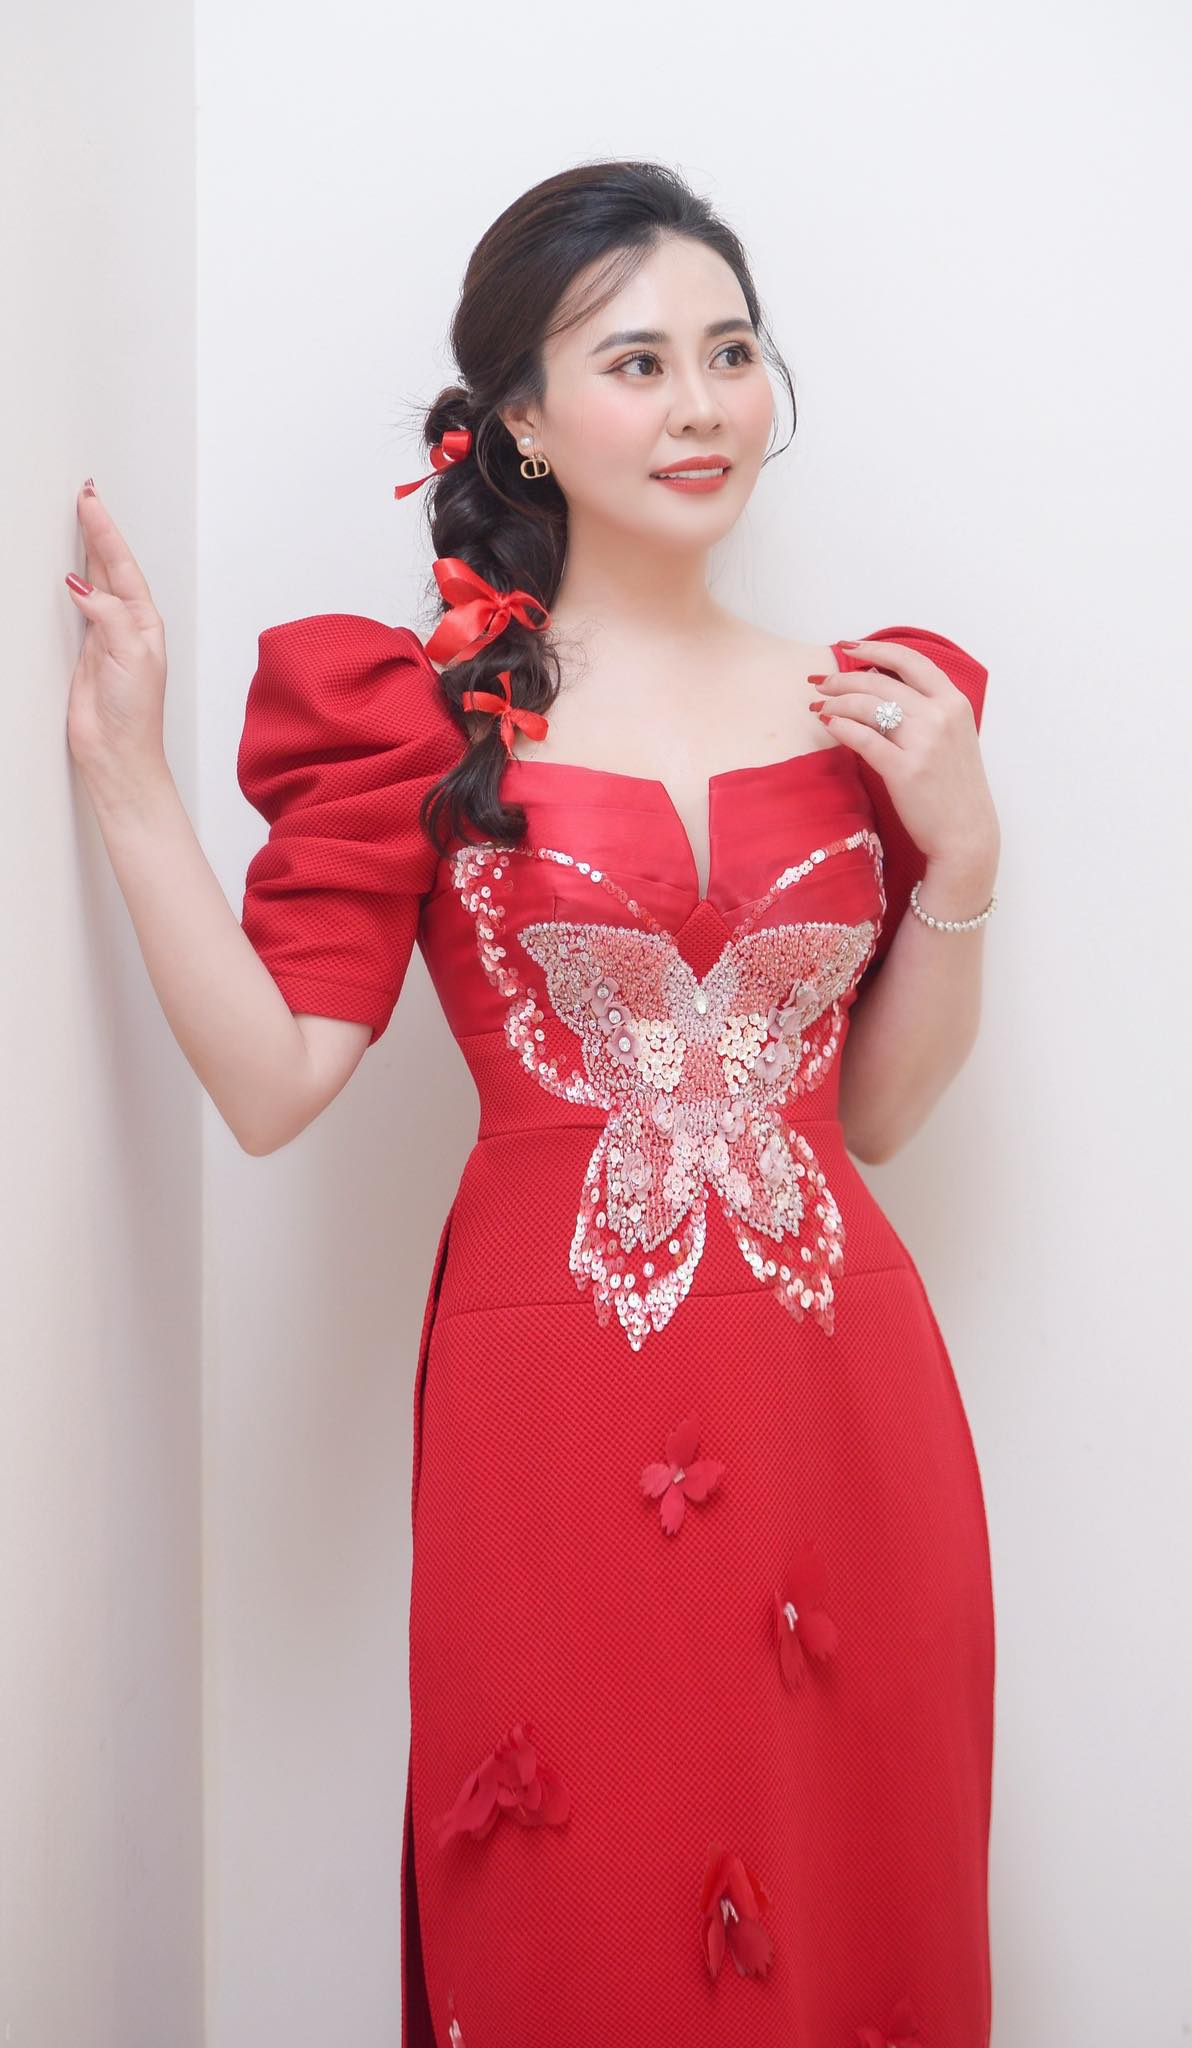 Hoa hậu Phan Kim Oanh khoe sắc vóc với áo dài đỏ, chấm thi gói bánh chưng- Ảnh 1.